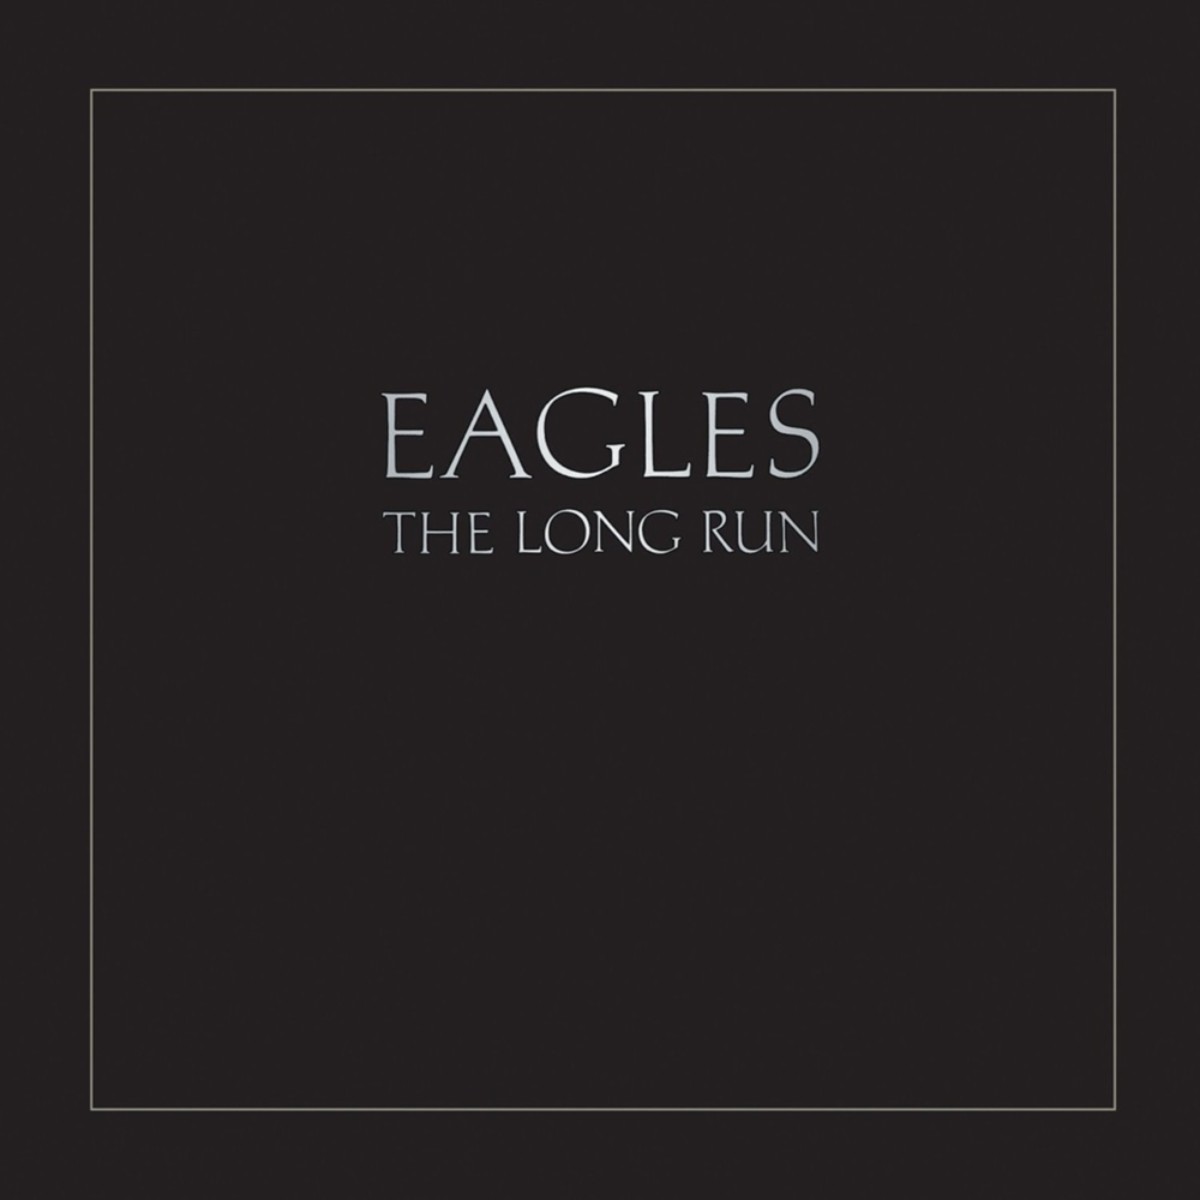 The Eagles, álbum "The Long Run".